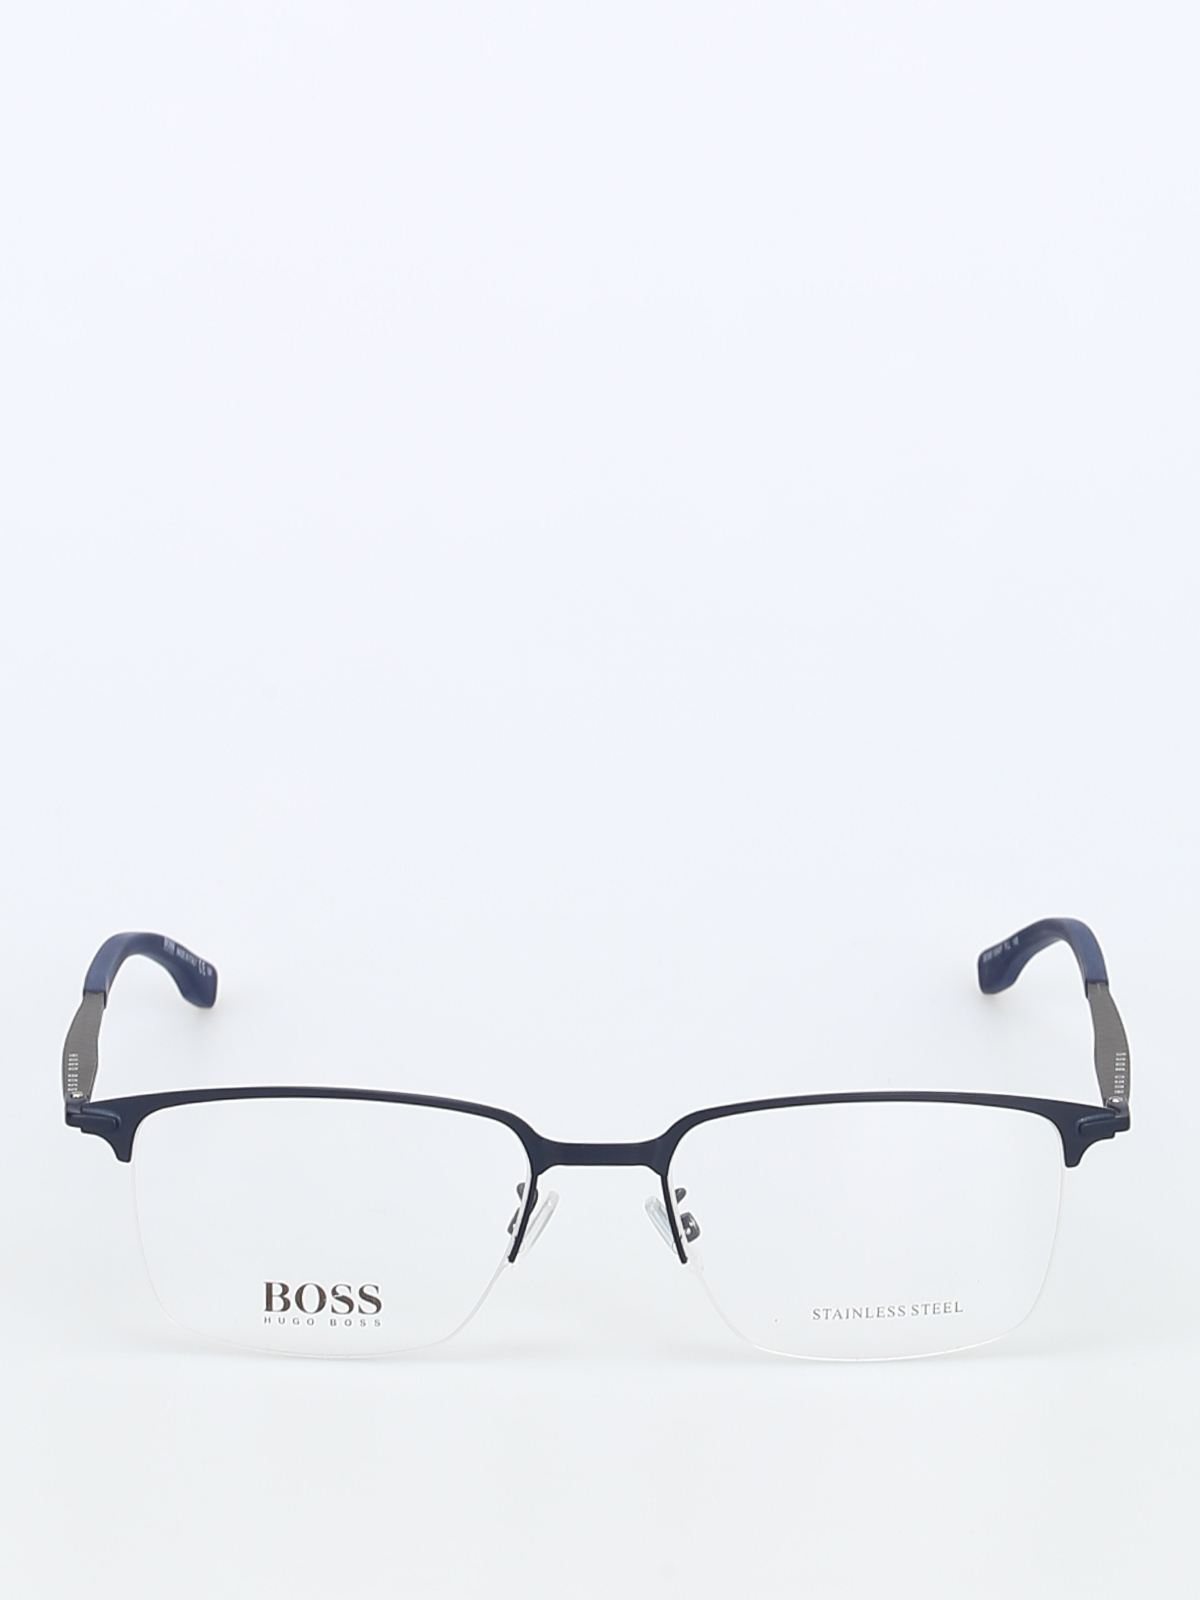 boss glasses frames